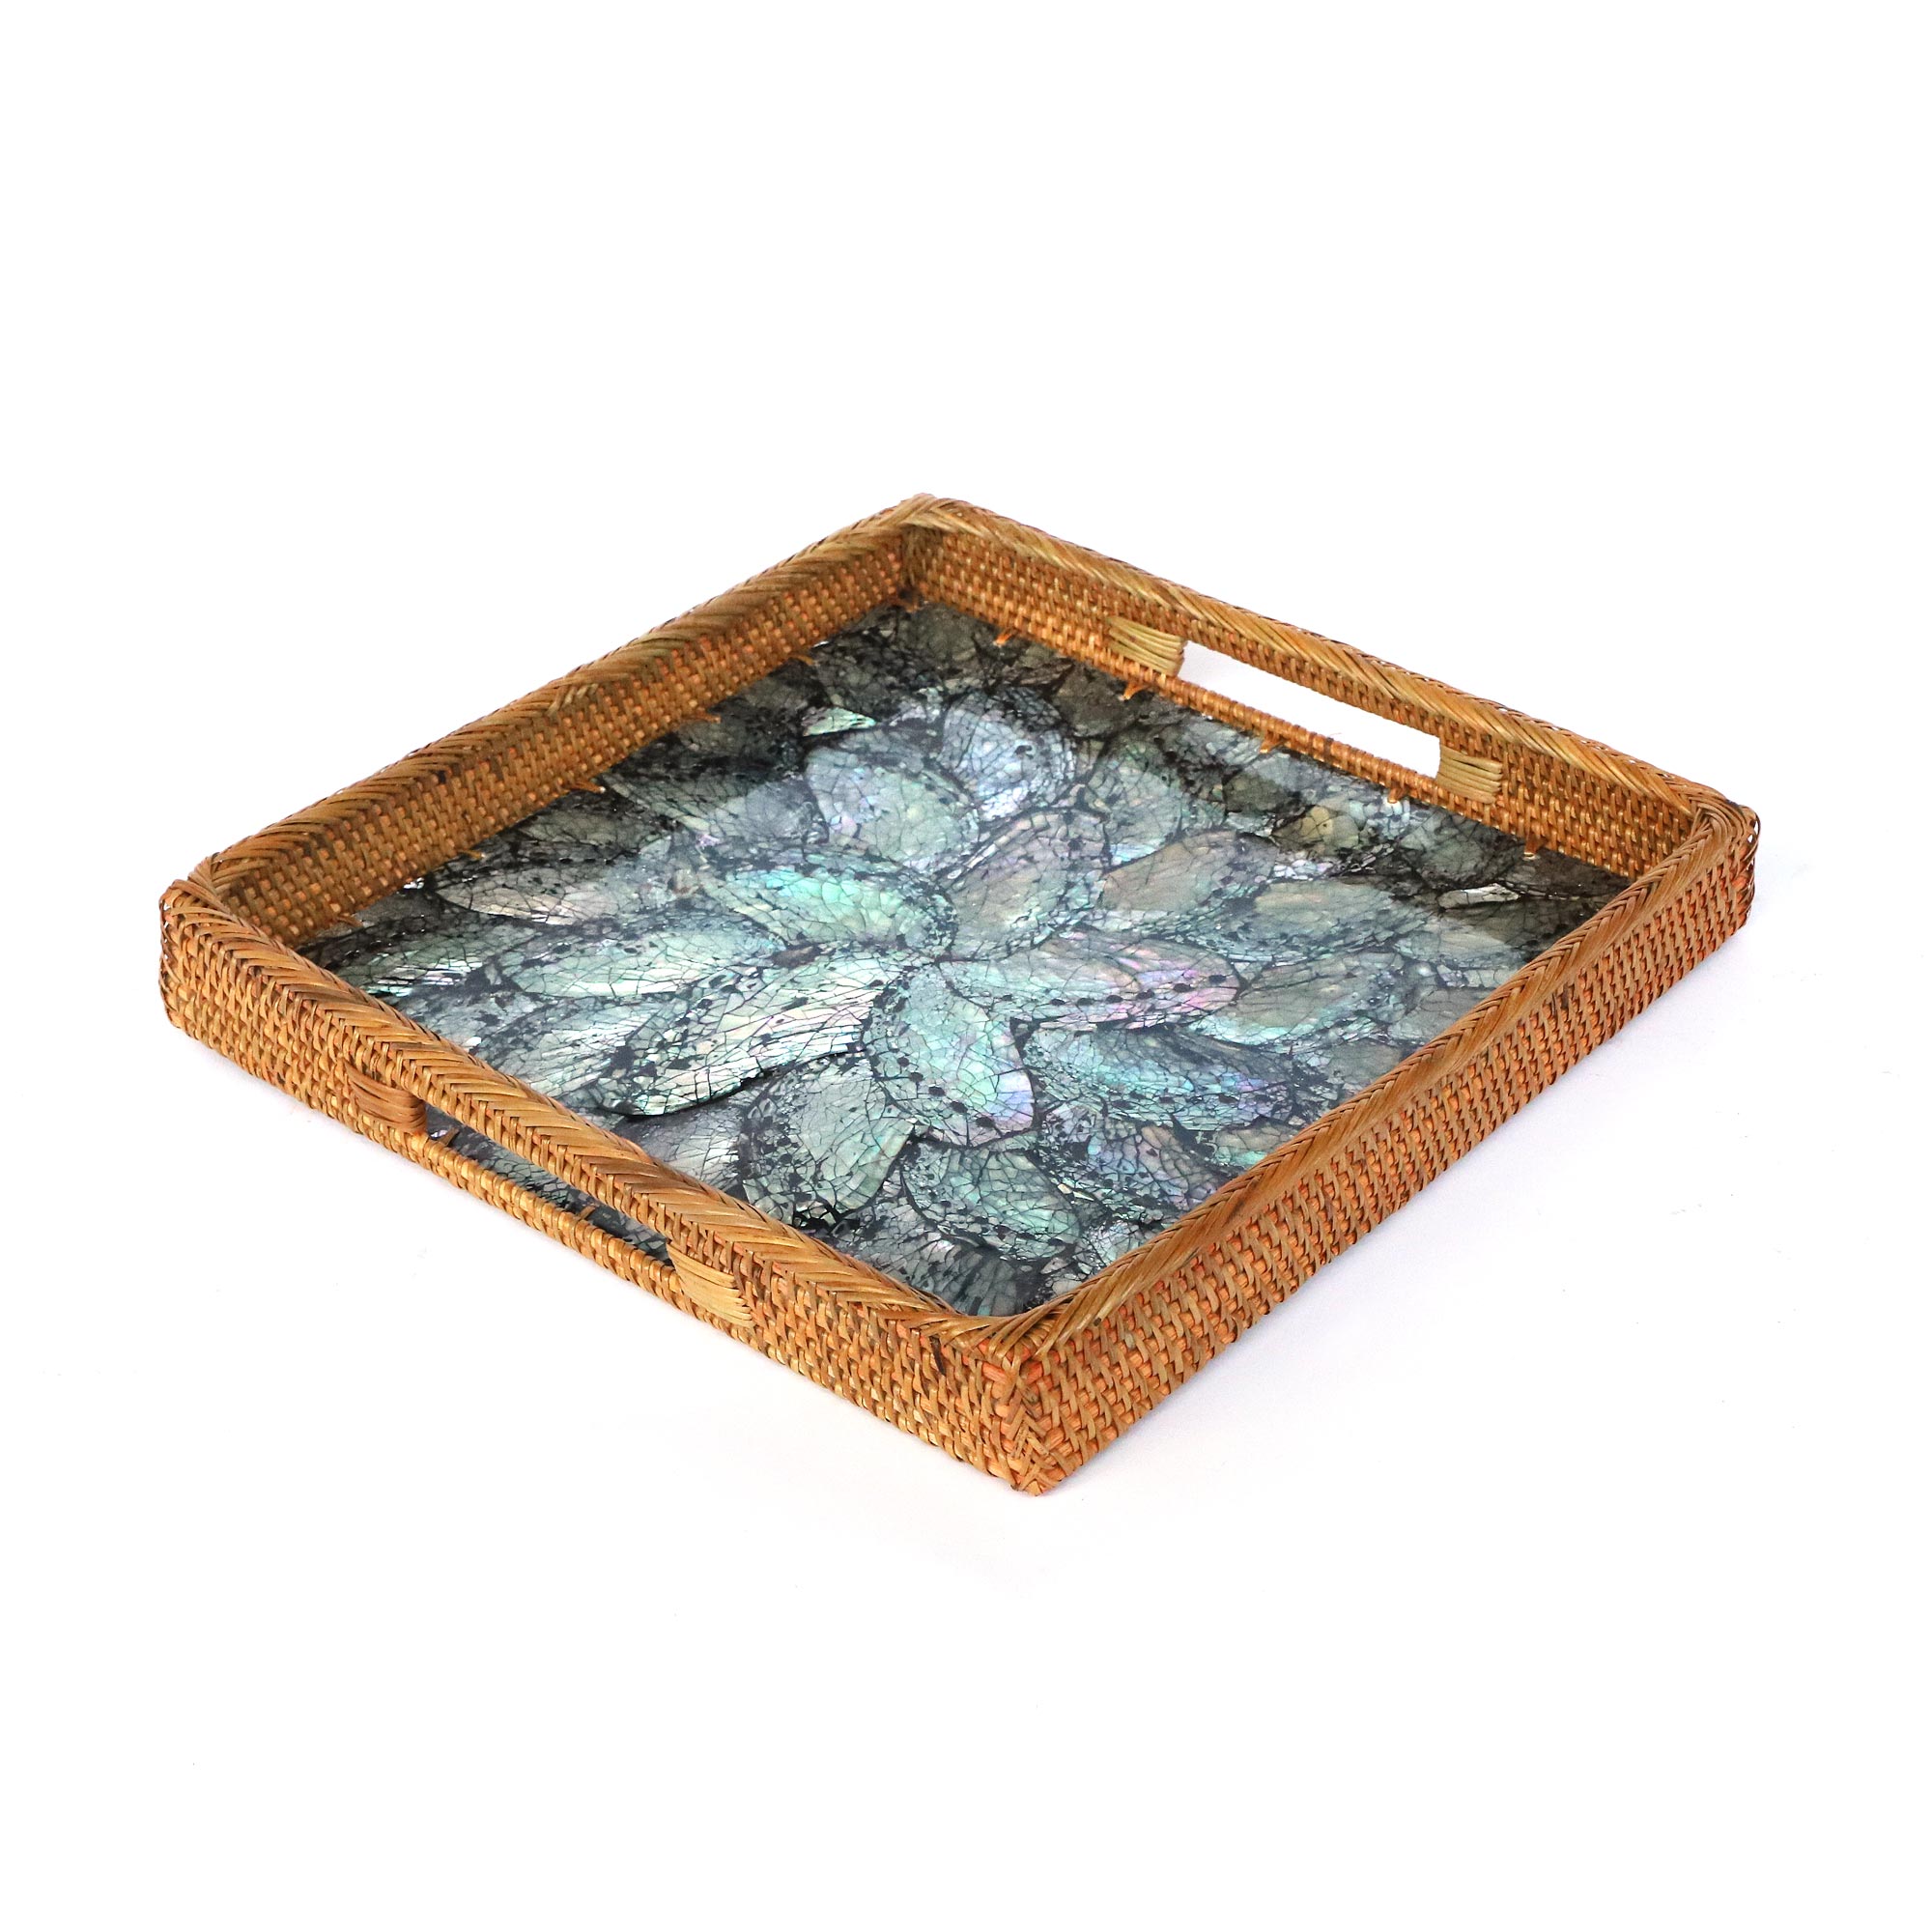 Rattan-Tablett mit Perlmutt-Boden, B 30 cm, L 30 cm, H4 cm zu 39,00 €